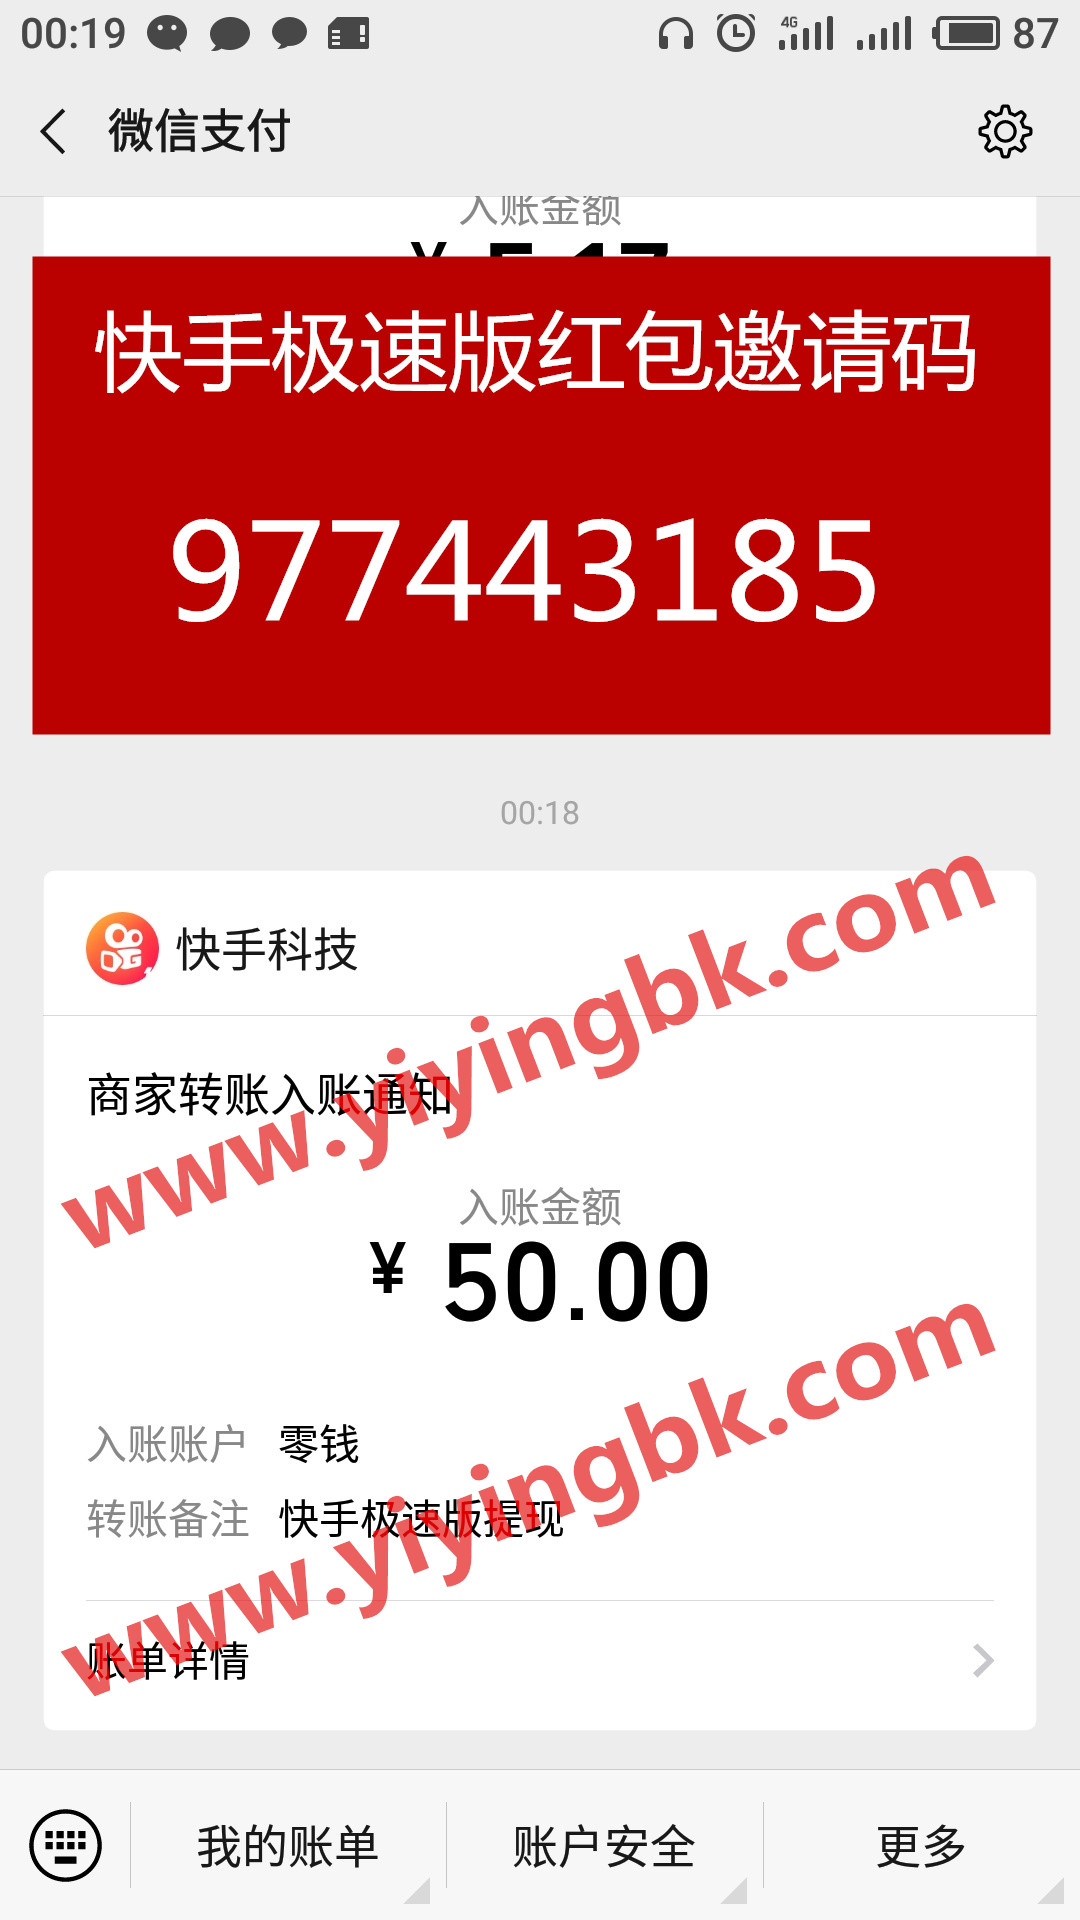 快手极速版红包邀请码977443185，看视频免费赚钱，微信提现50元秒到账。www.yiyingbk.com